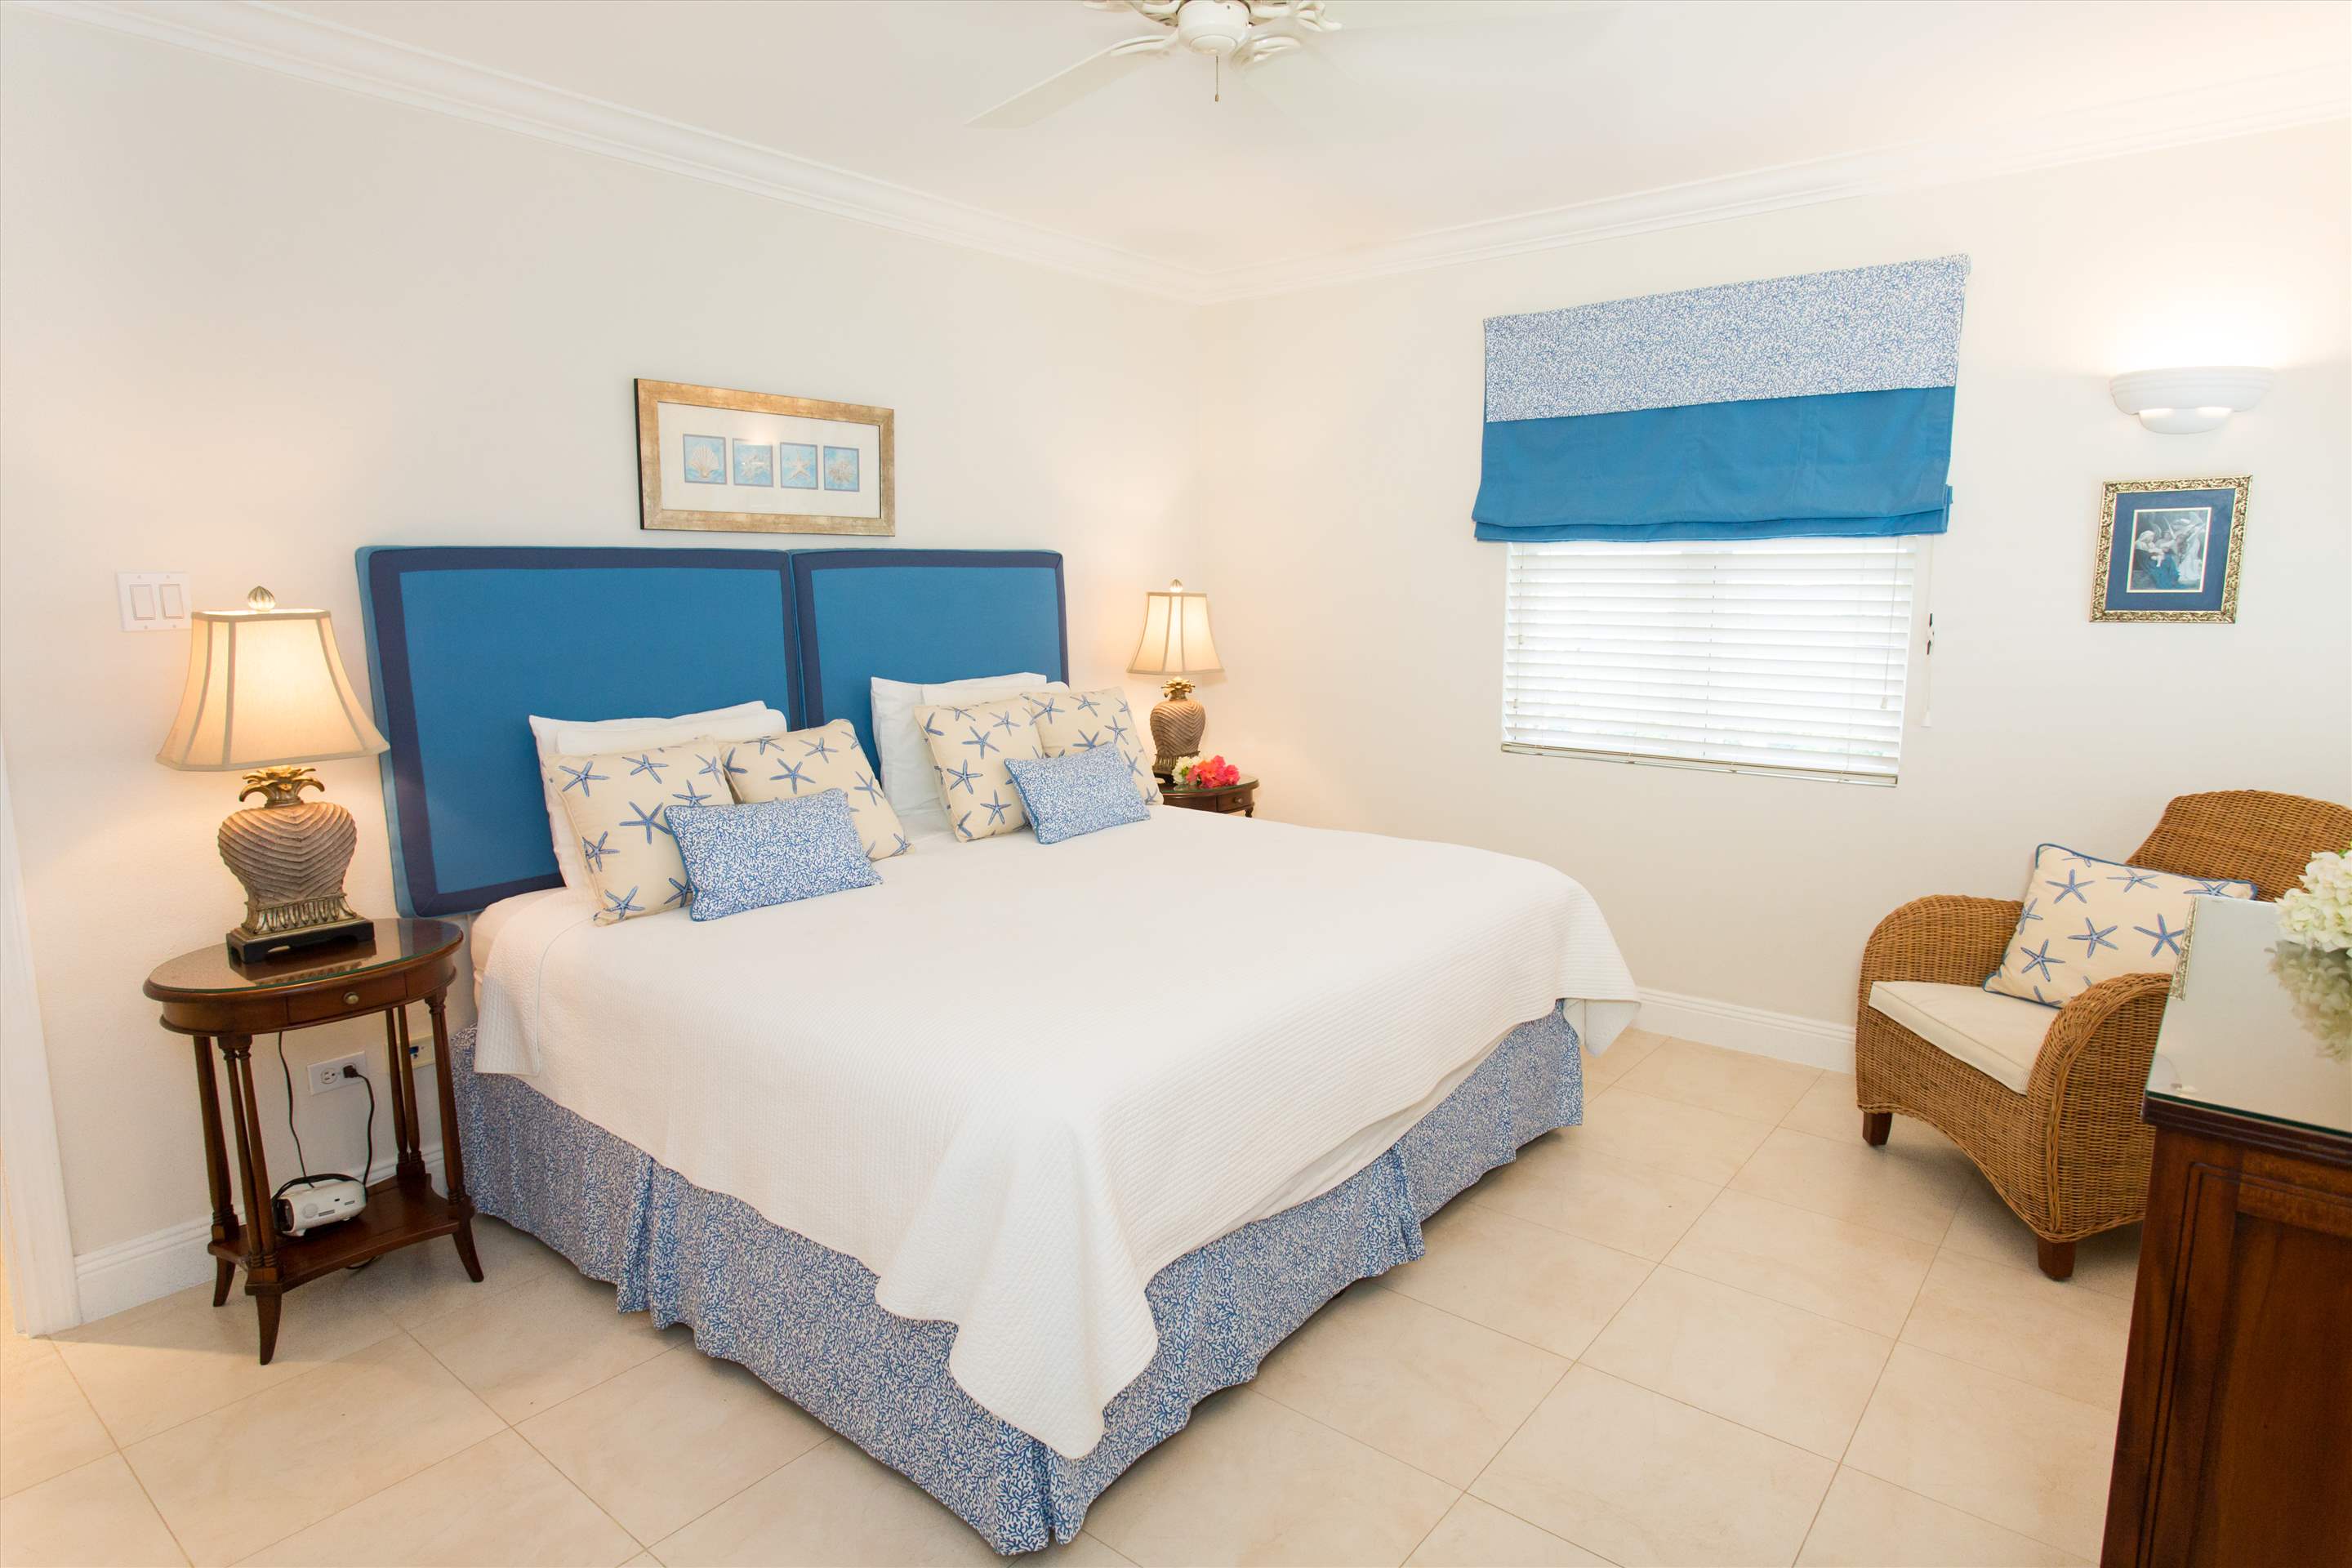 Sandy Hook 21, 2 bedroom, 2 bedroom villa in St. Lawrence Gap & South Coast, Barbados Photo #11